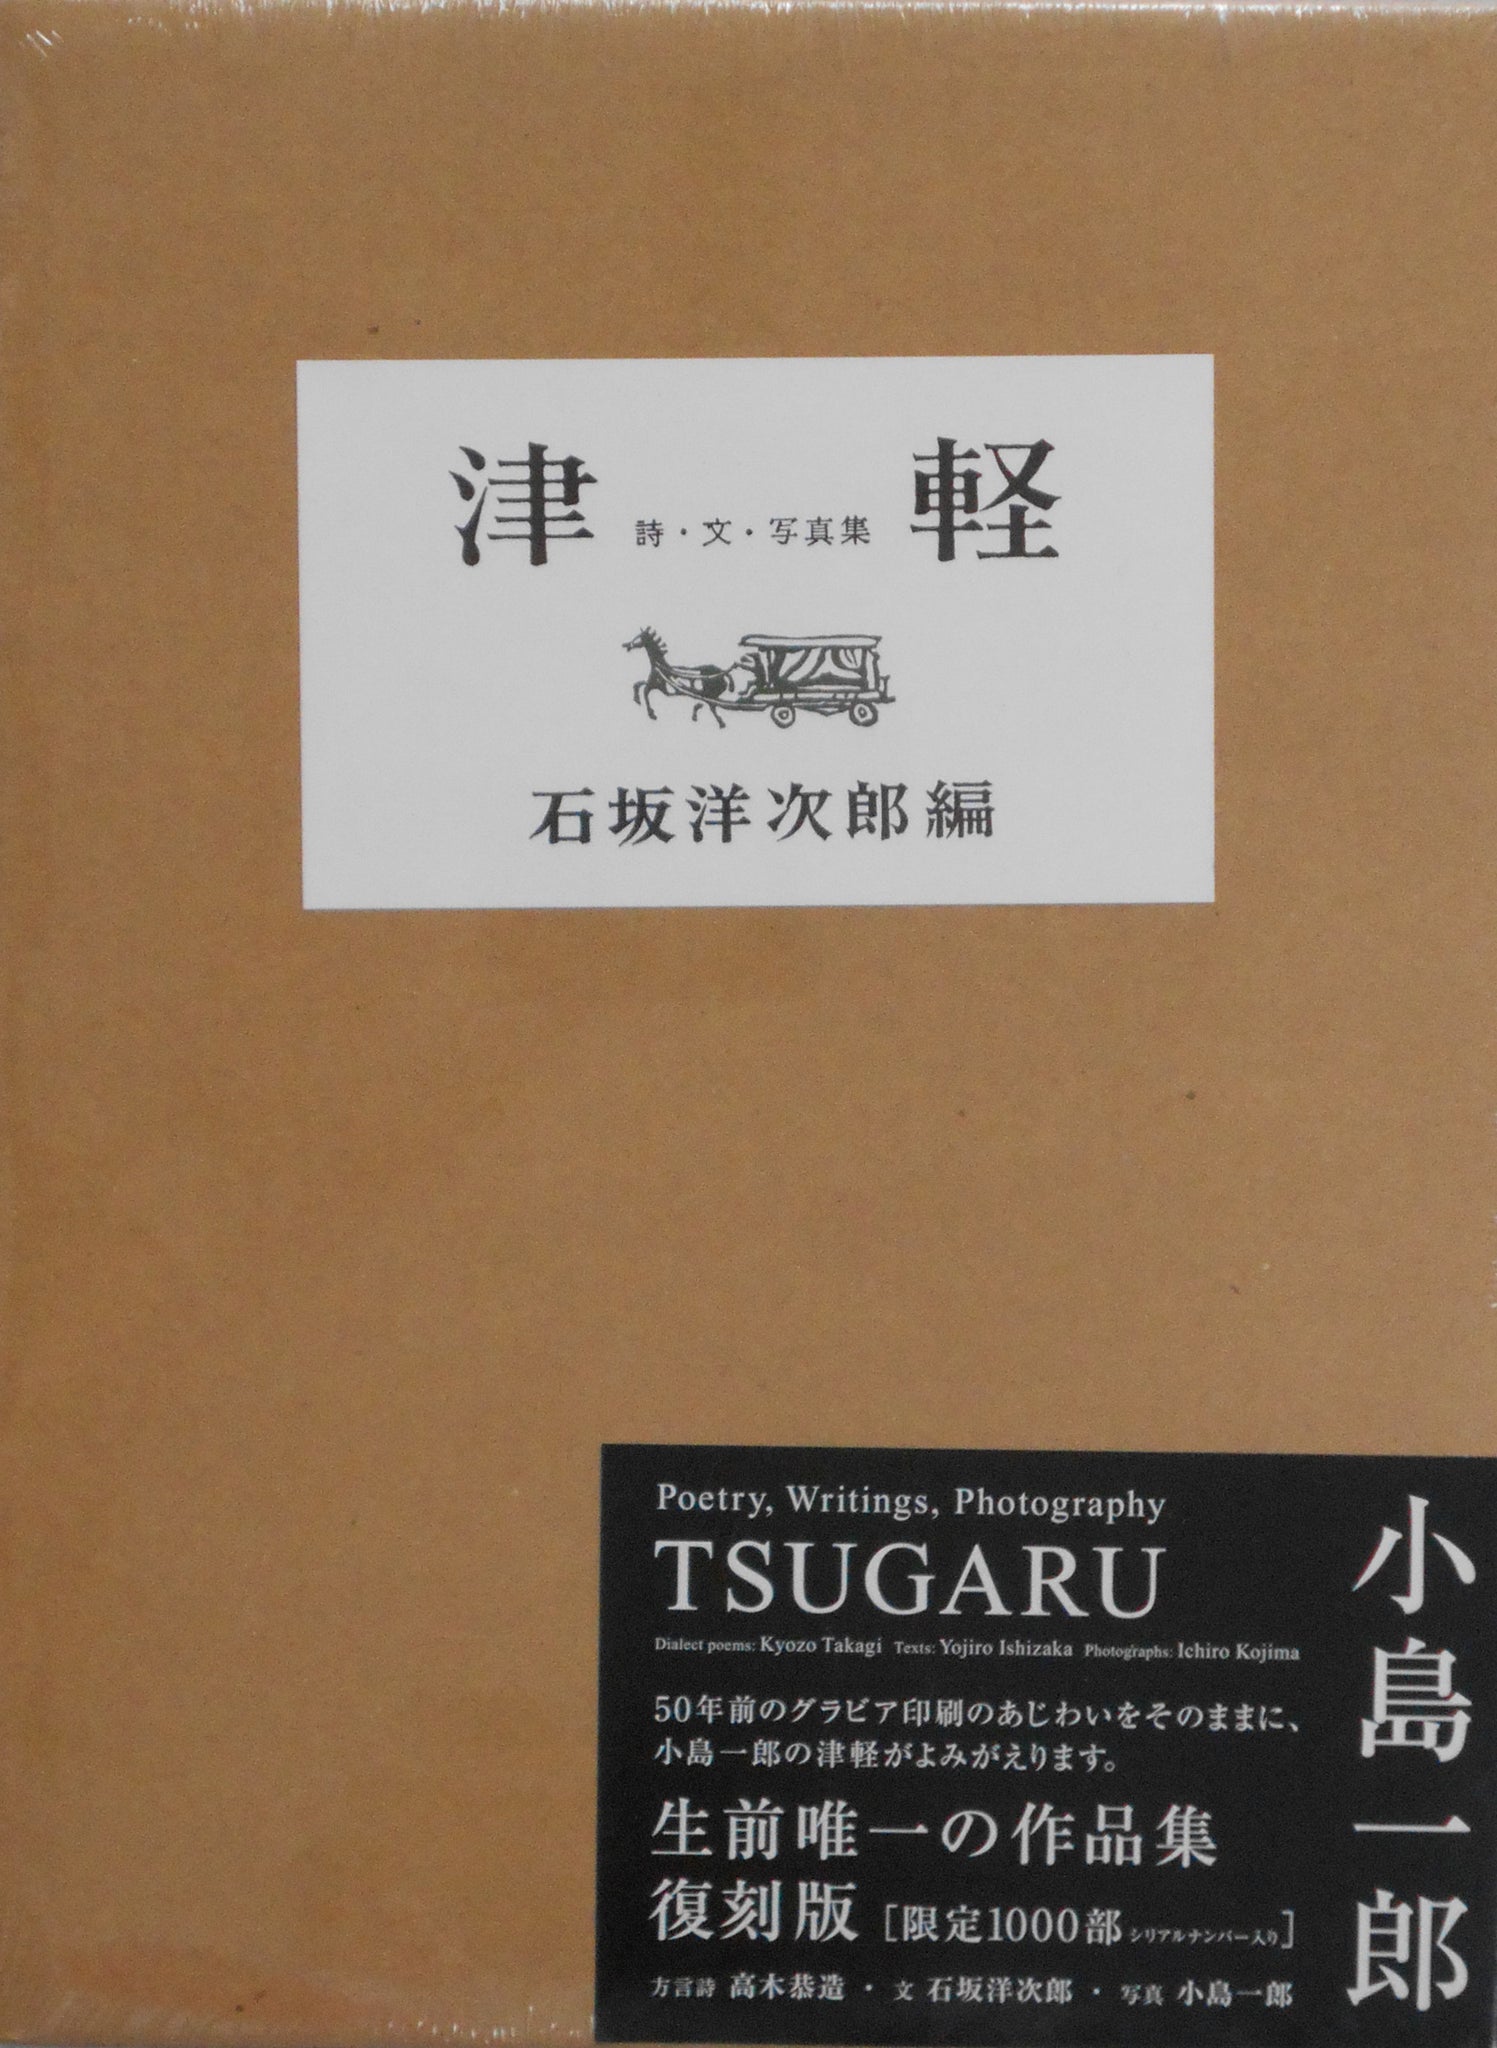 Tsugaru (Reprint) | Ichiro Kojima | Izu Photo Museum 2014